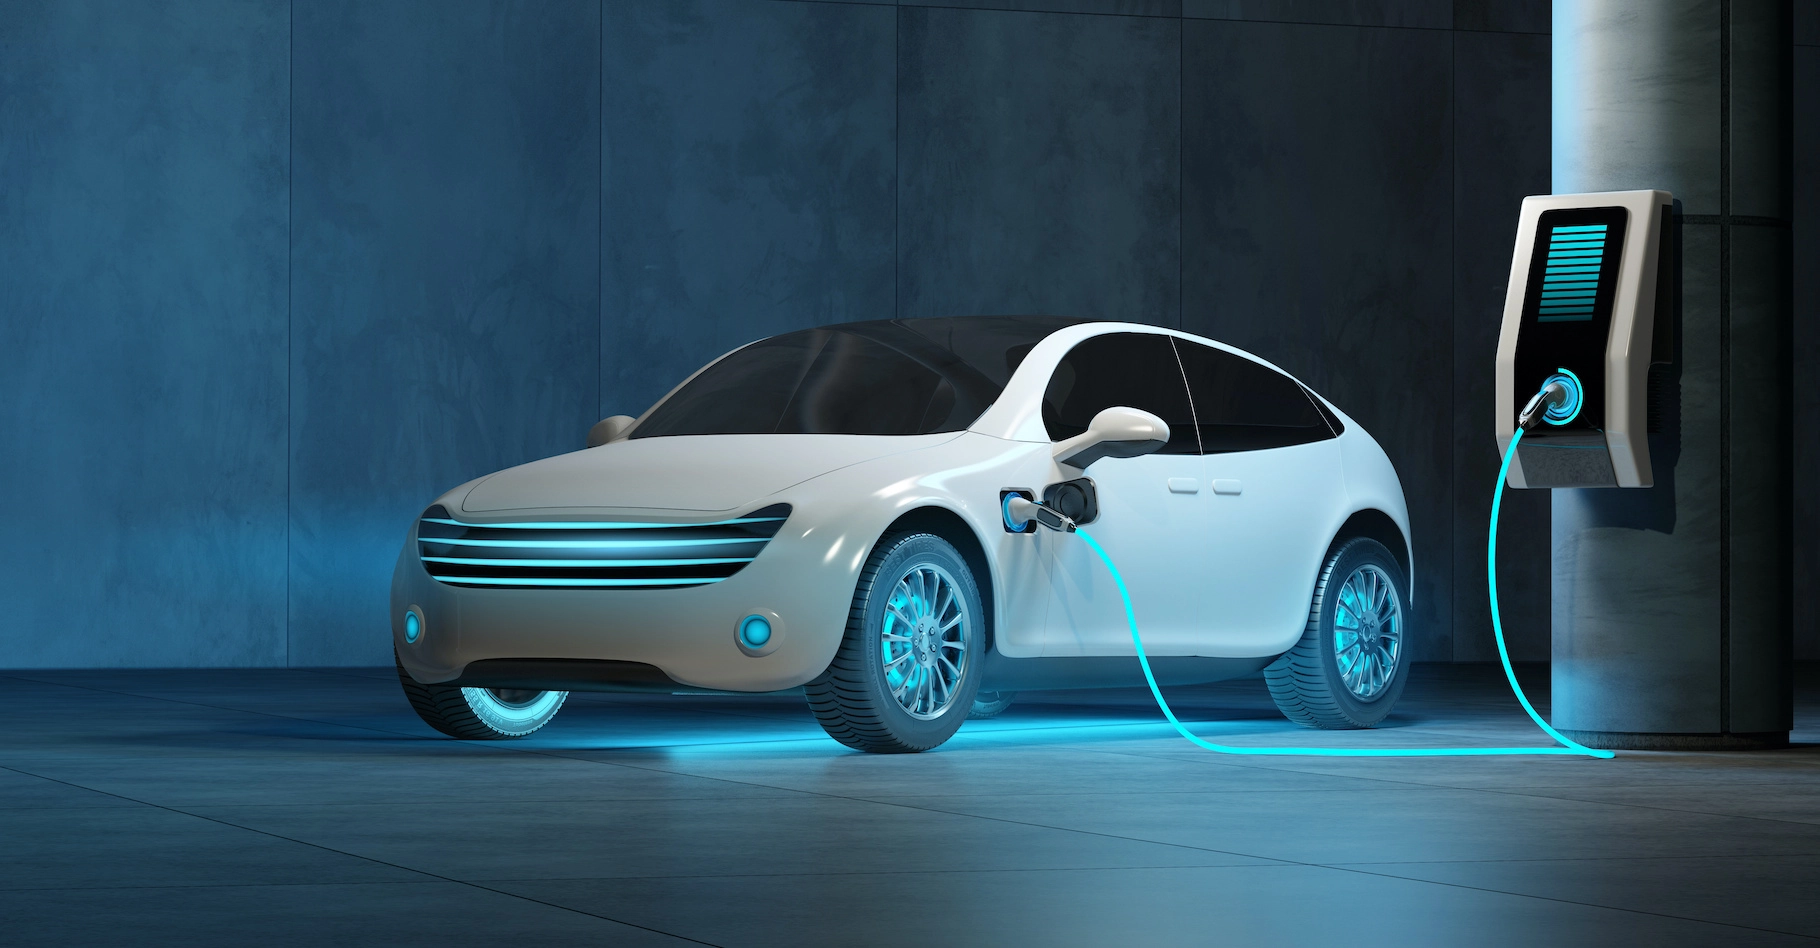 La voiture électrique : un avenir prometteur pour la mobilité durable